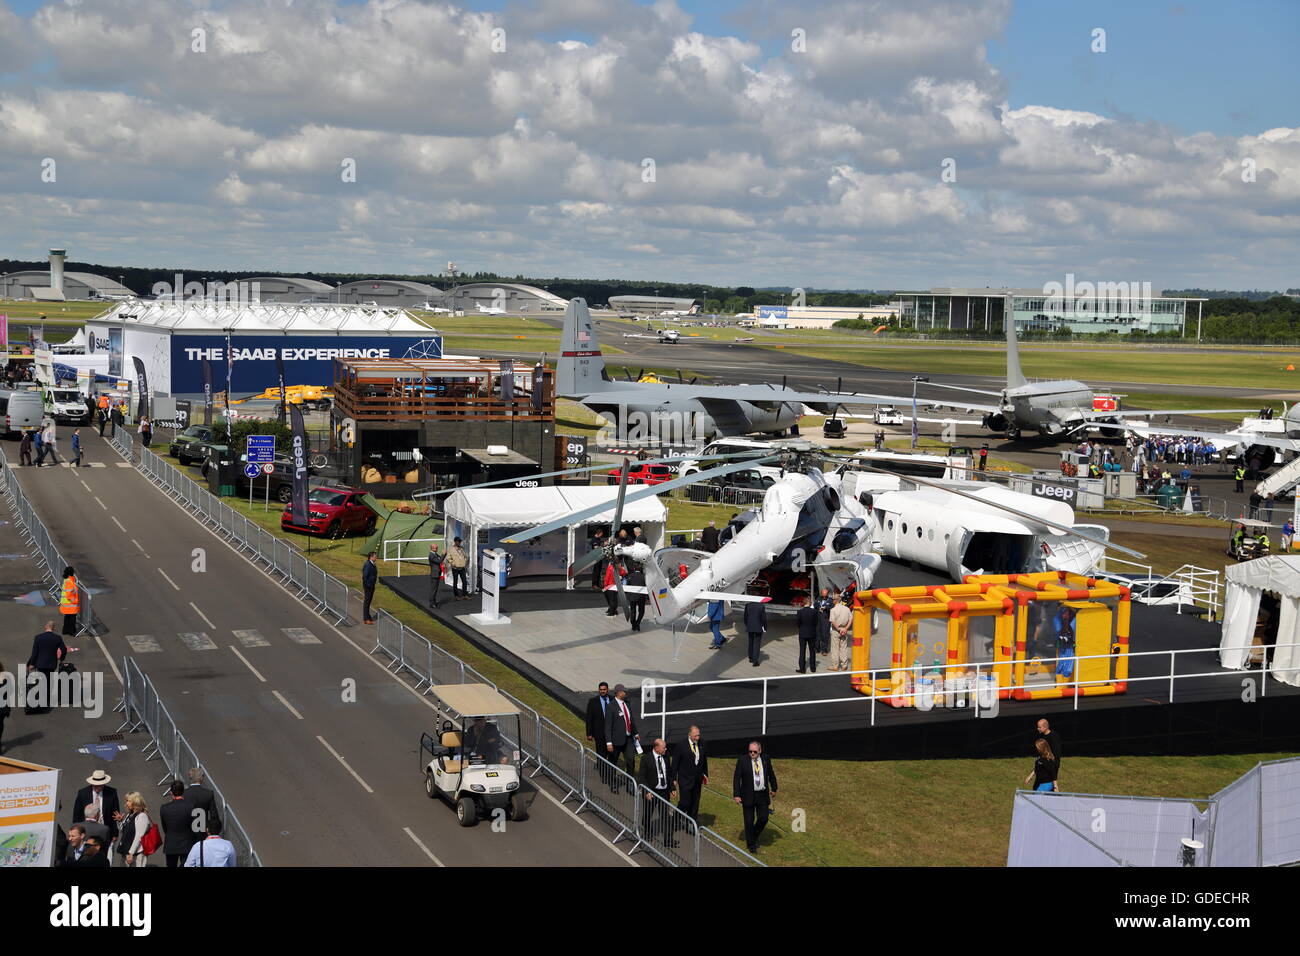 Les exposants du monde entier se sont réunis pour Farnborough International Airshow 2016 Banque D'Images